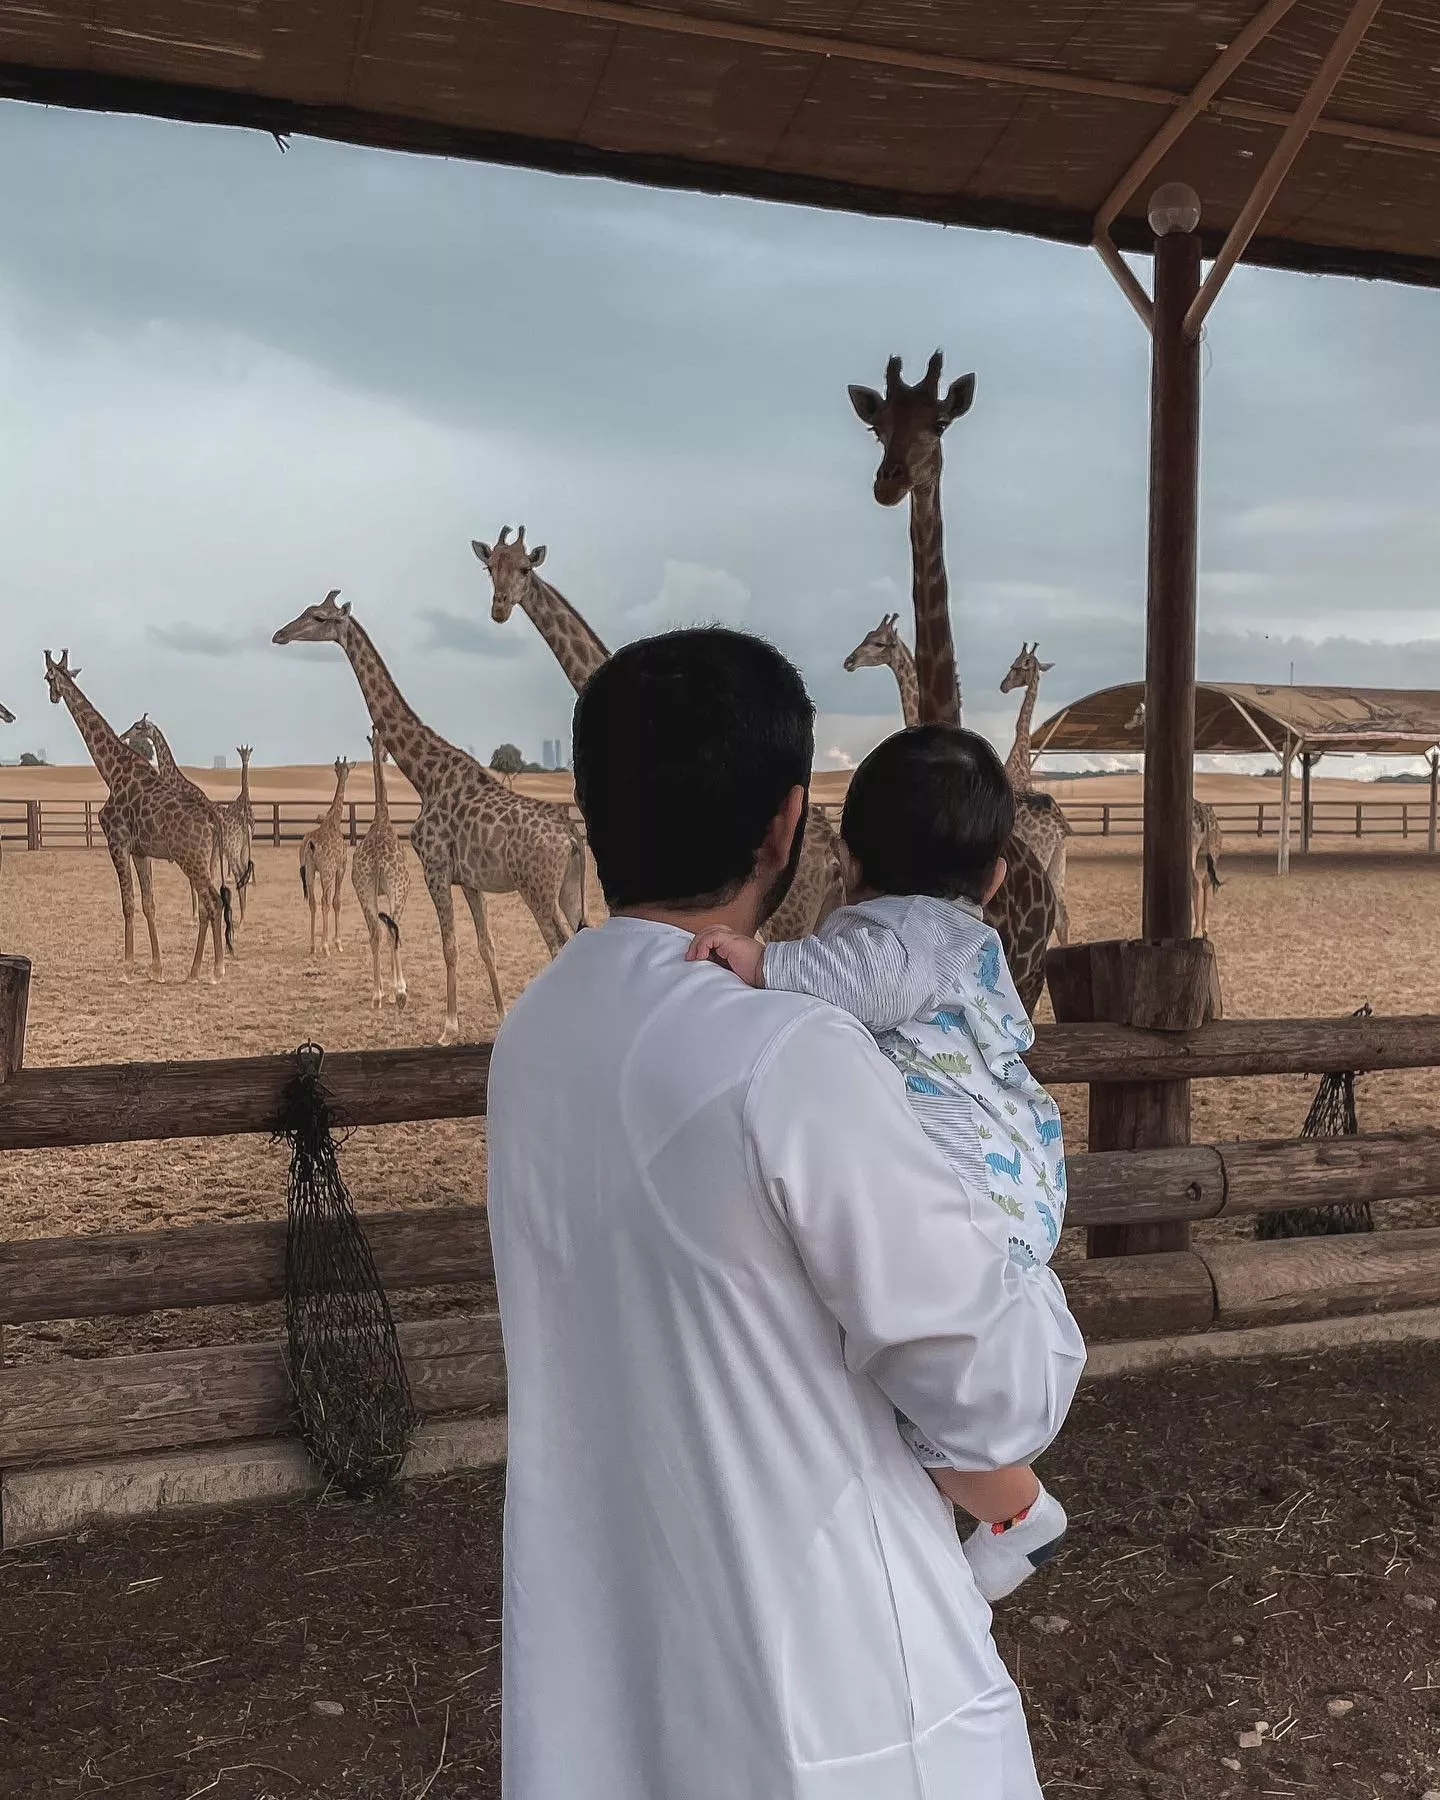 الشيخ حمدان يتشارك حبّه للطبيعة مع توأمه في أجدد صور معهما